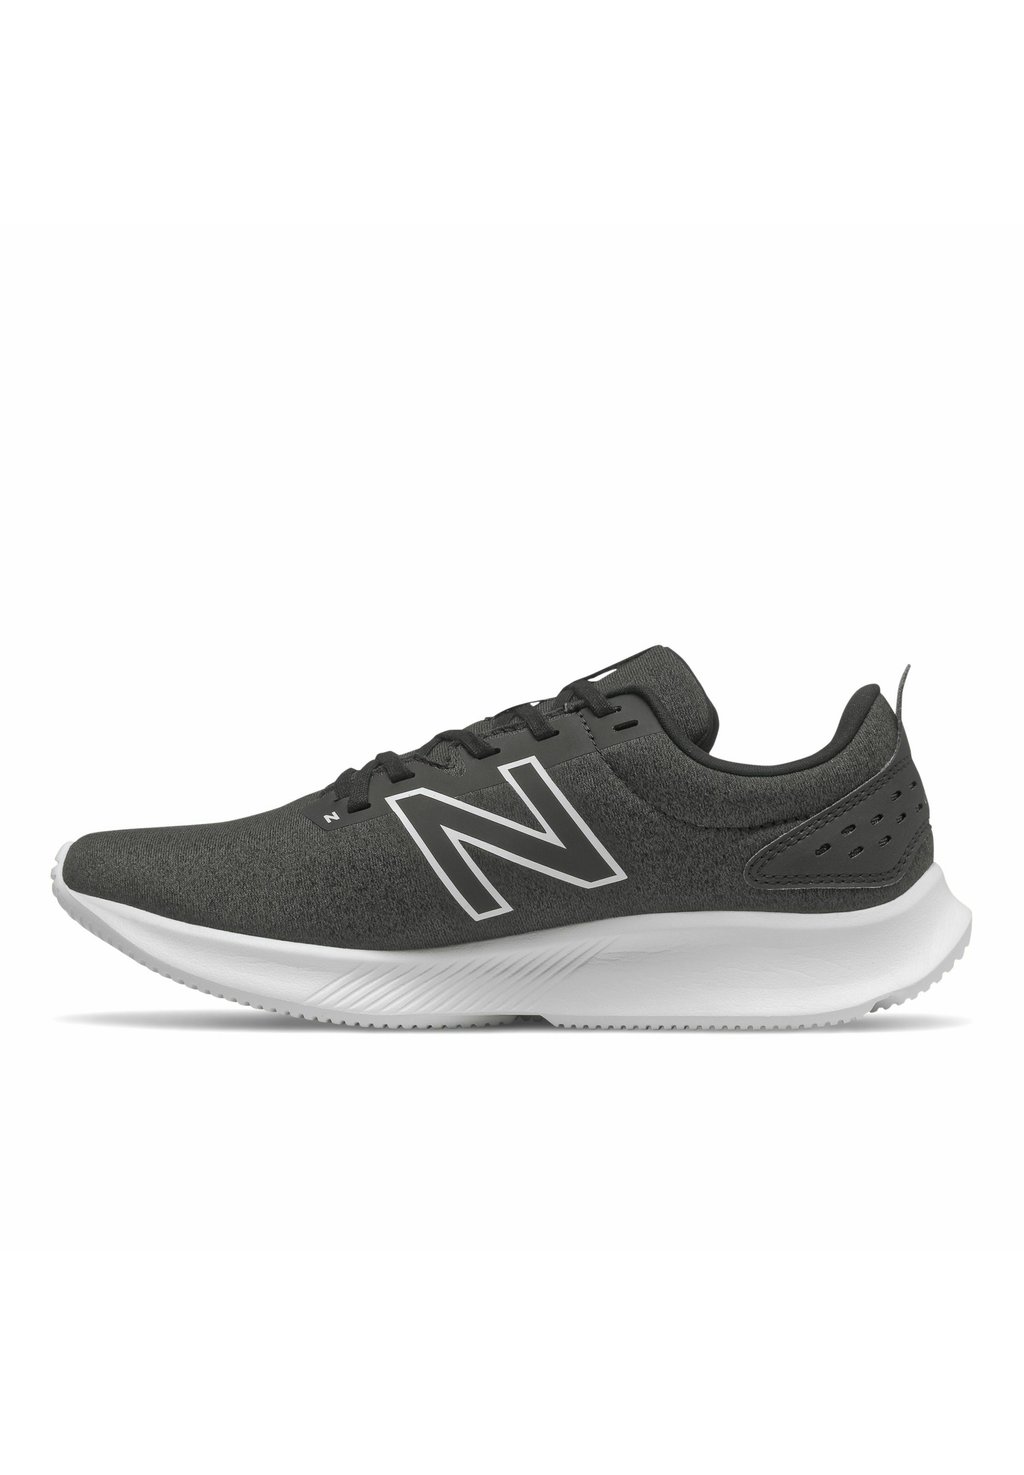 Нейтральные кроссовки New Balance, черное серебро